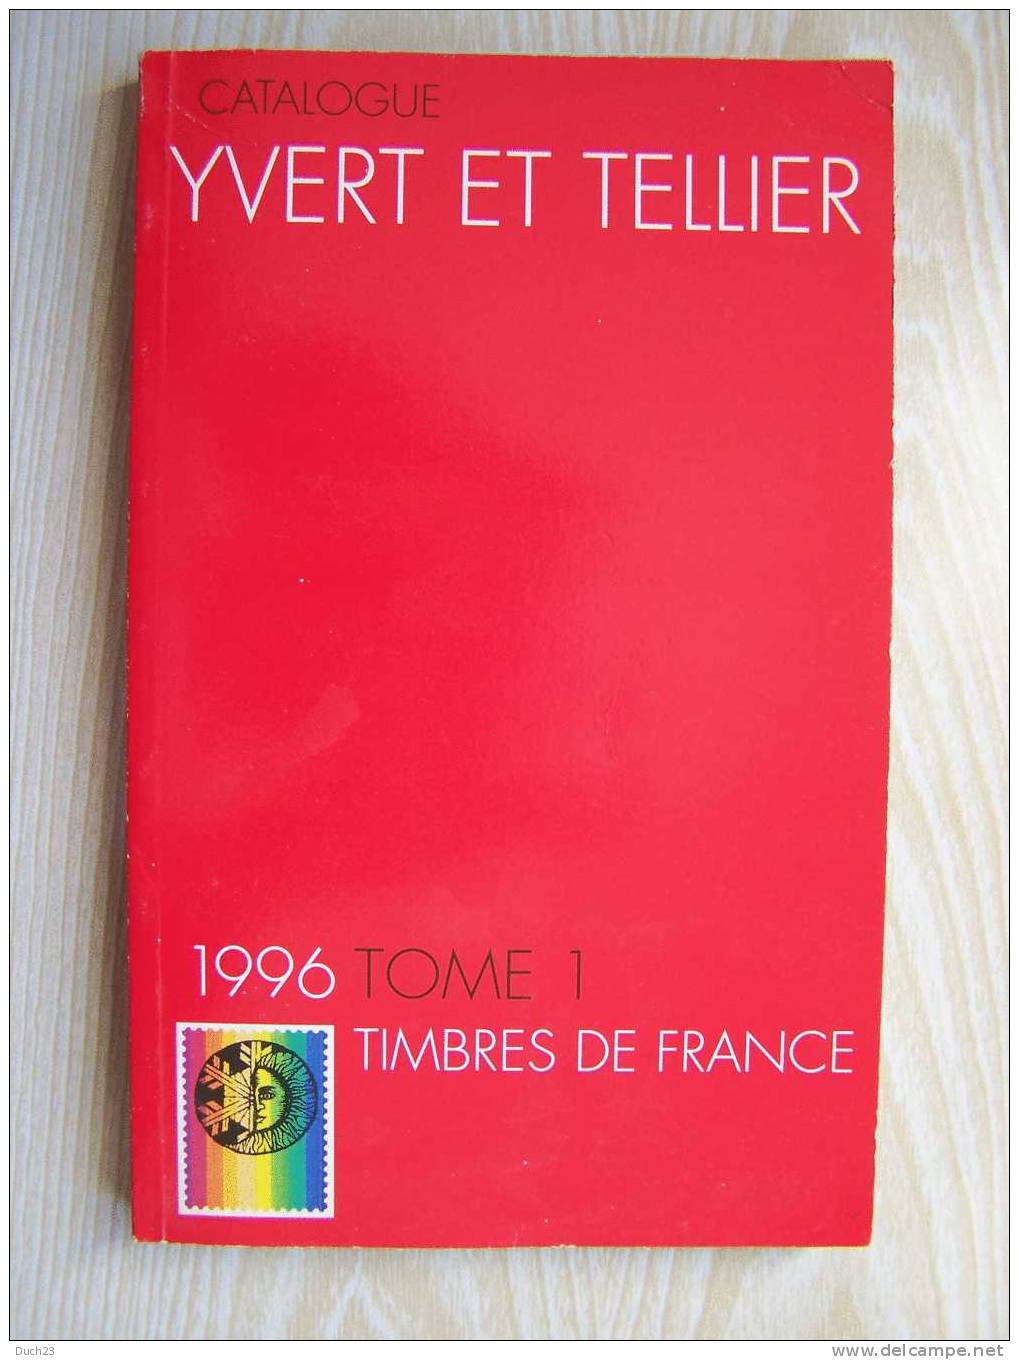 CATALOGUE DE COTATION YVERT ET TELLIER ANNEE 1996 TOME 1   TRES BON ETAT   REF CD - Frankreich